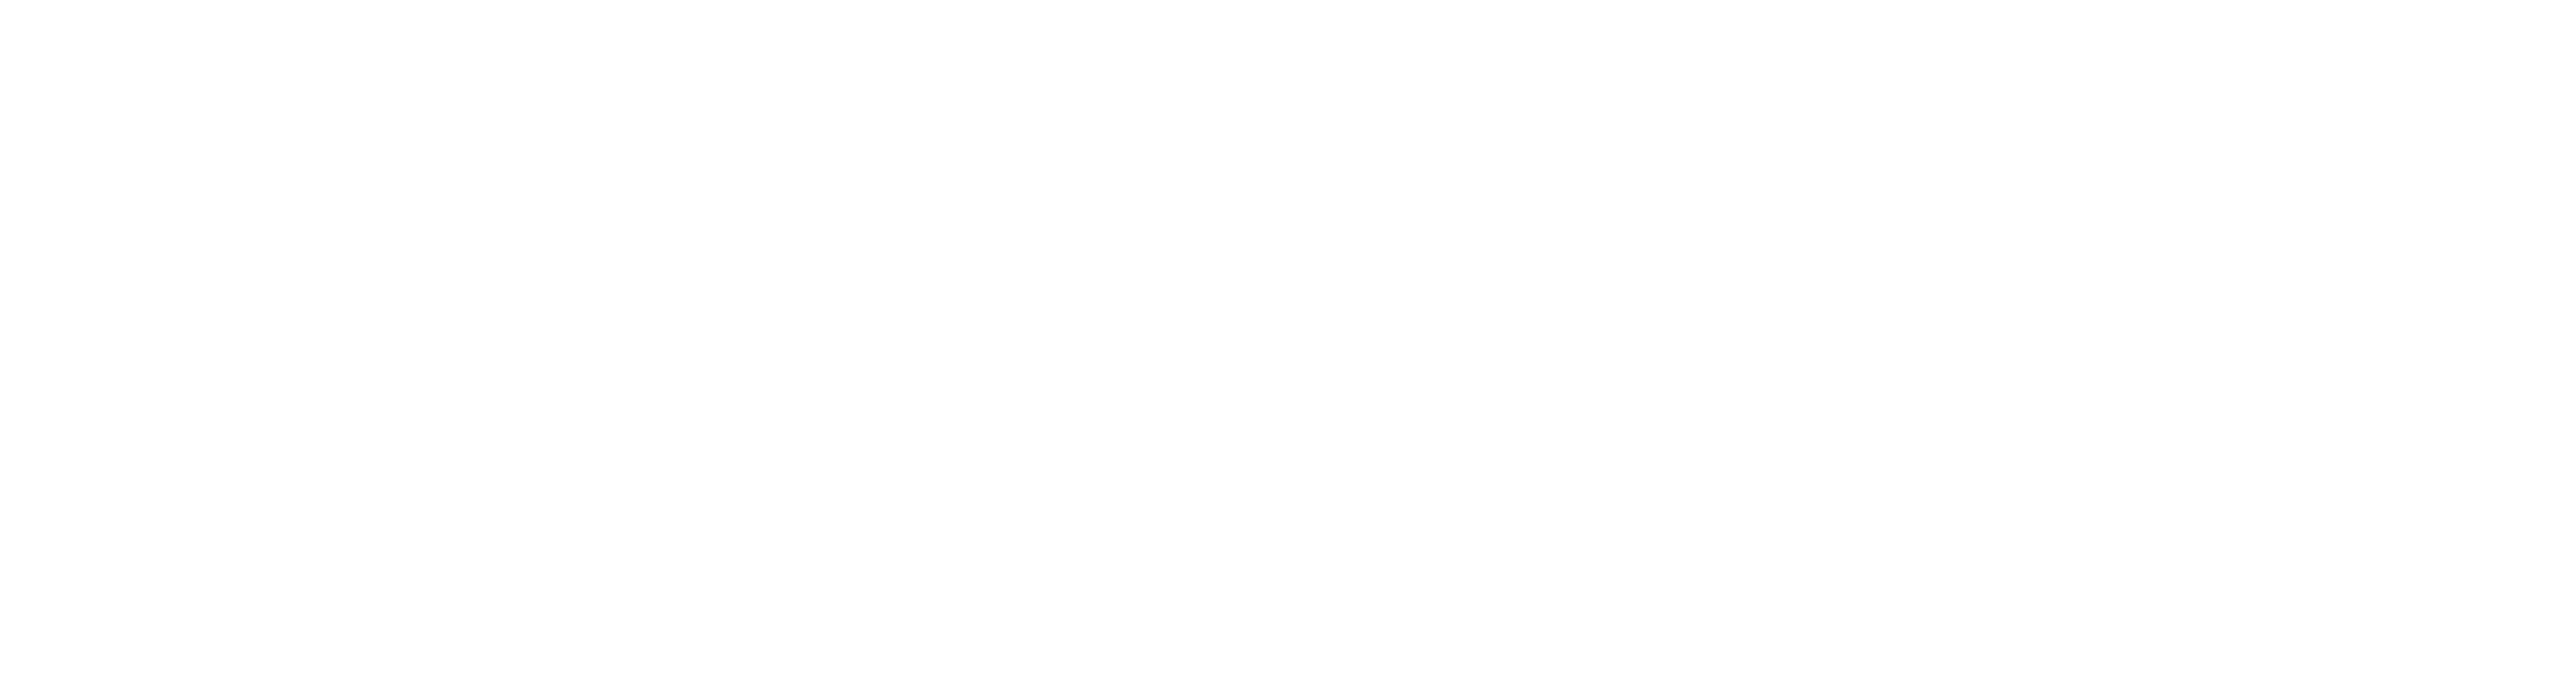 tim_hortons-logo-white